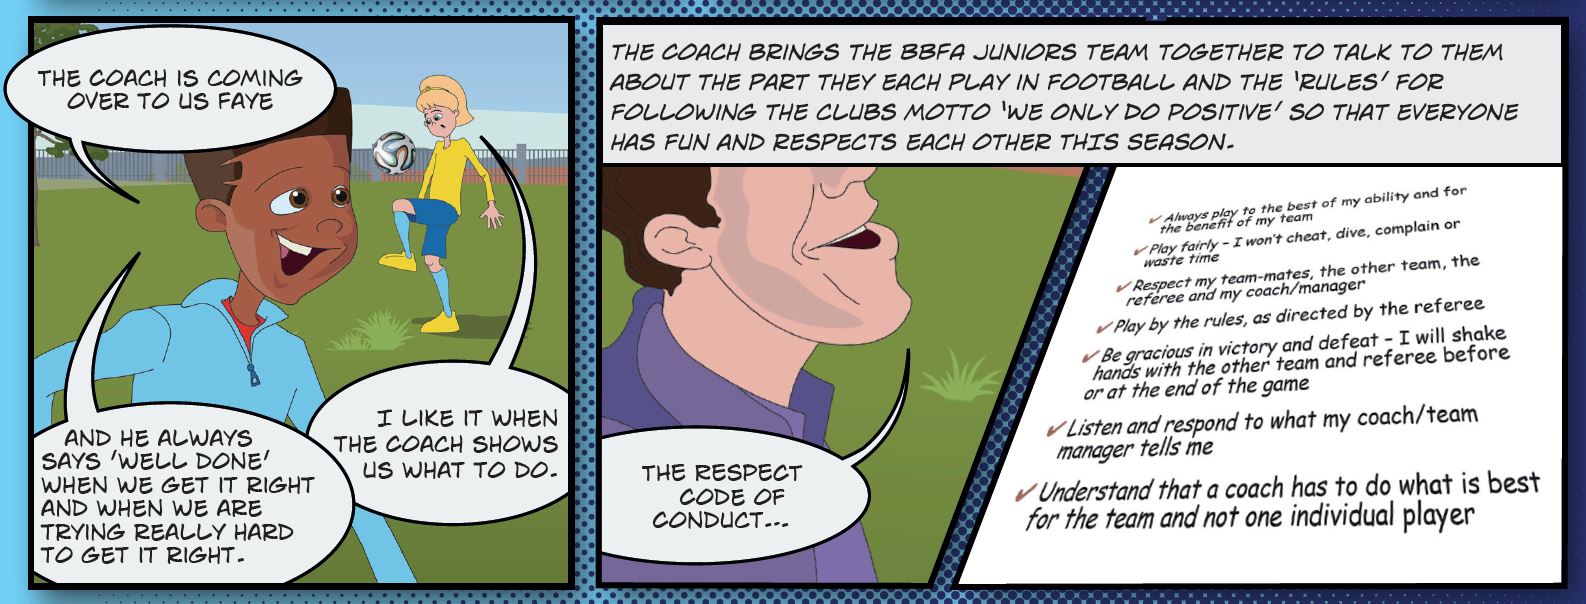 BBFA Juniors Comic Strip 1 excerpt1